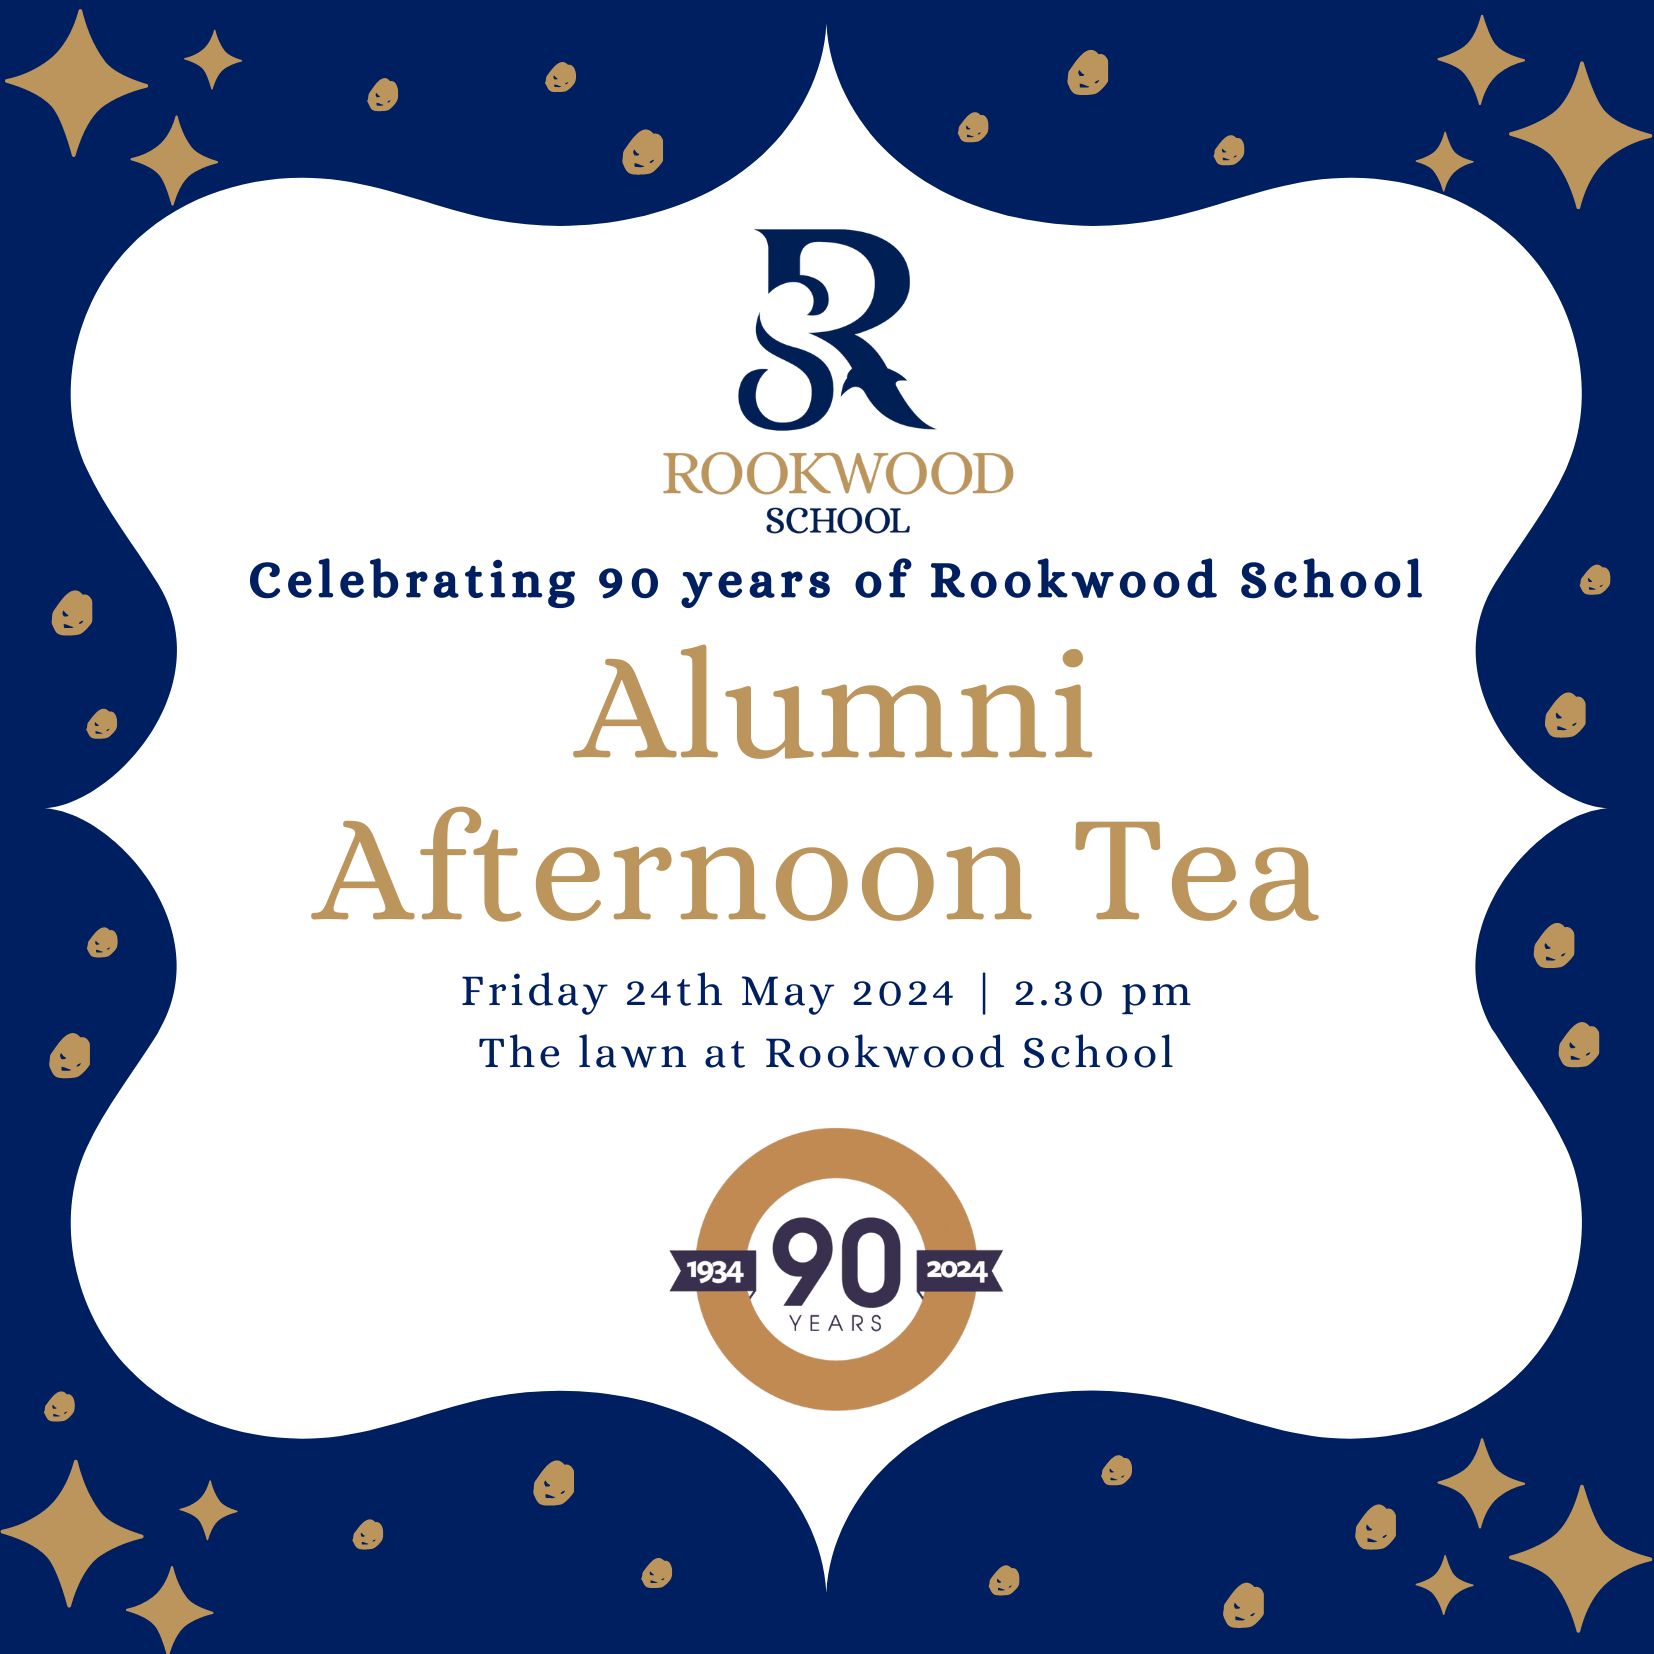 Rookwood's Alumni Afternoon Tea